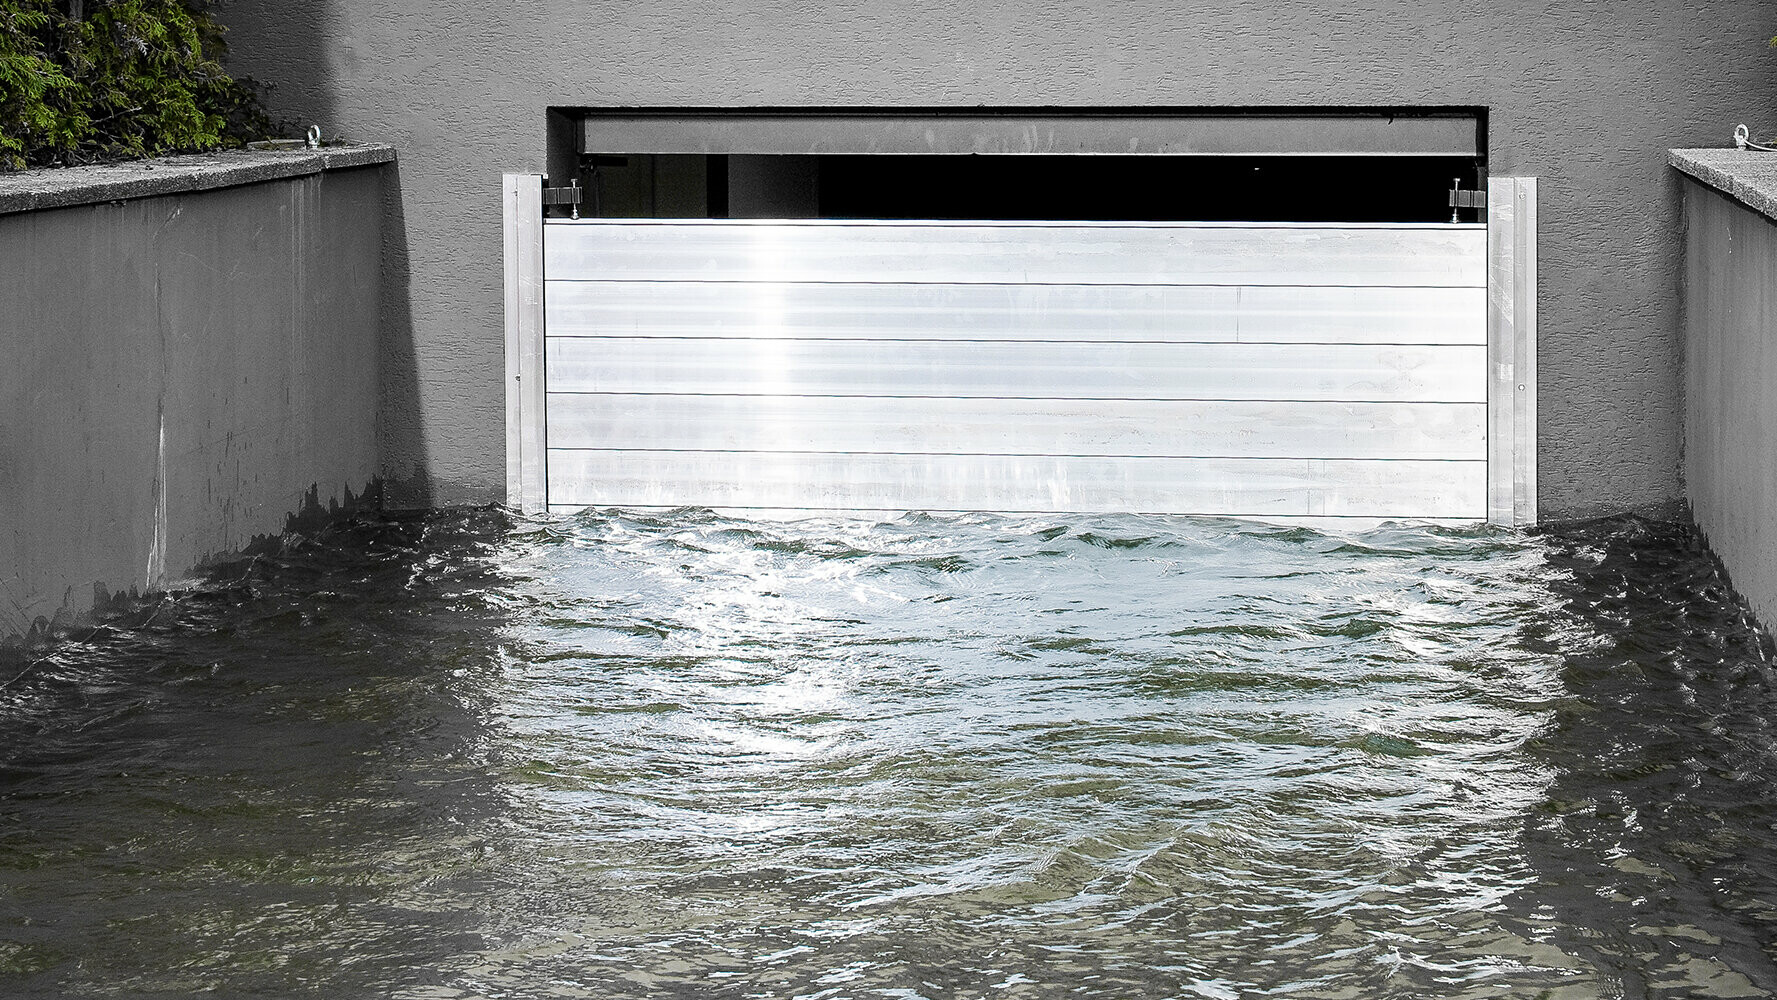 PREFA zaštita od poplava na djelu: Aluminijska barijera učinkovito štiti od poplava. Sjajni metalni zid prkosi uzburkanoj vodi i štiti garažu iza sebe. Ovo HWS rješenje kombinira funkcionalnost s modernim, estetskim dizajnom i demonstrira održivu zaštitu objekata i krajolika snagom PREFA-e.